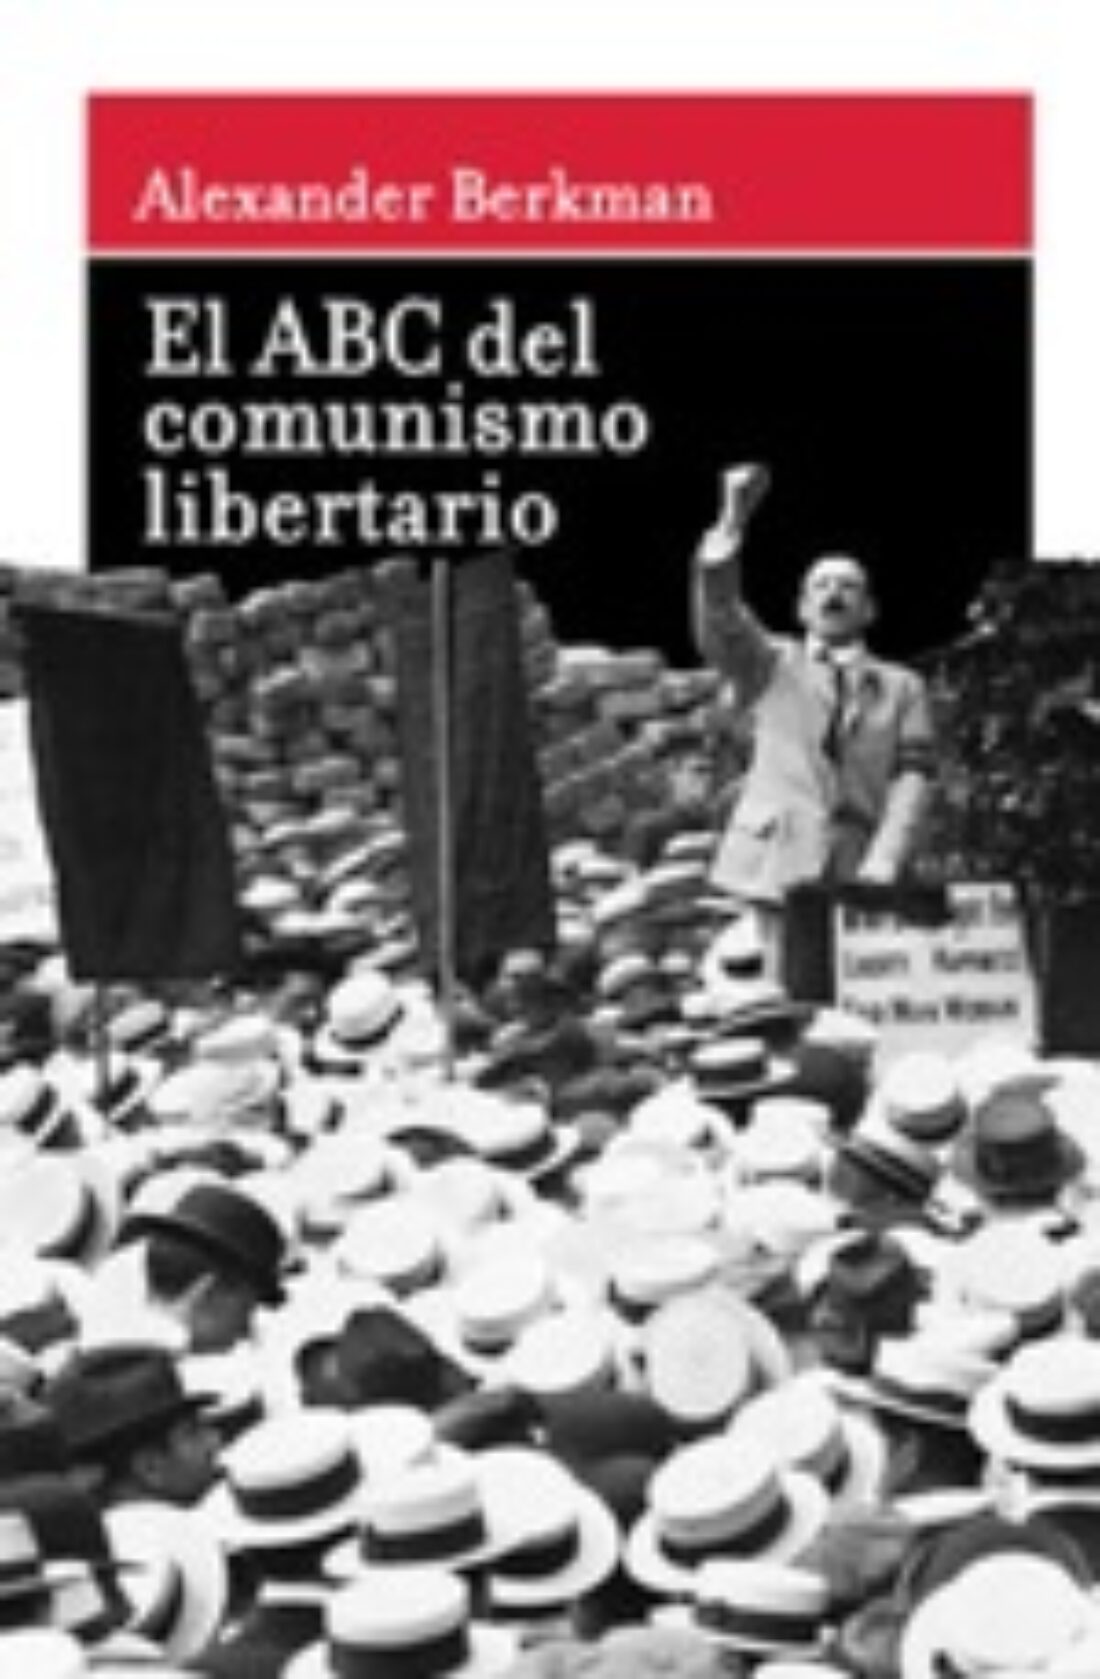 27 nov. Madrid : El ABC del comunismo libertario de Alexander Berkman